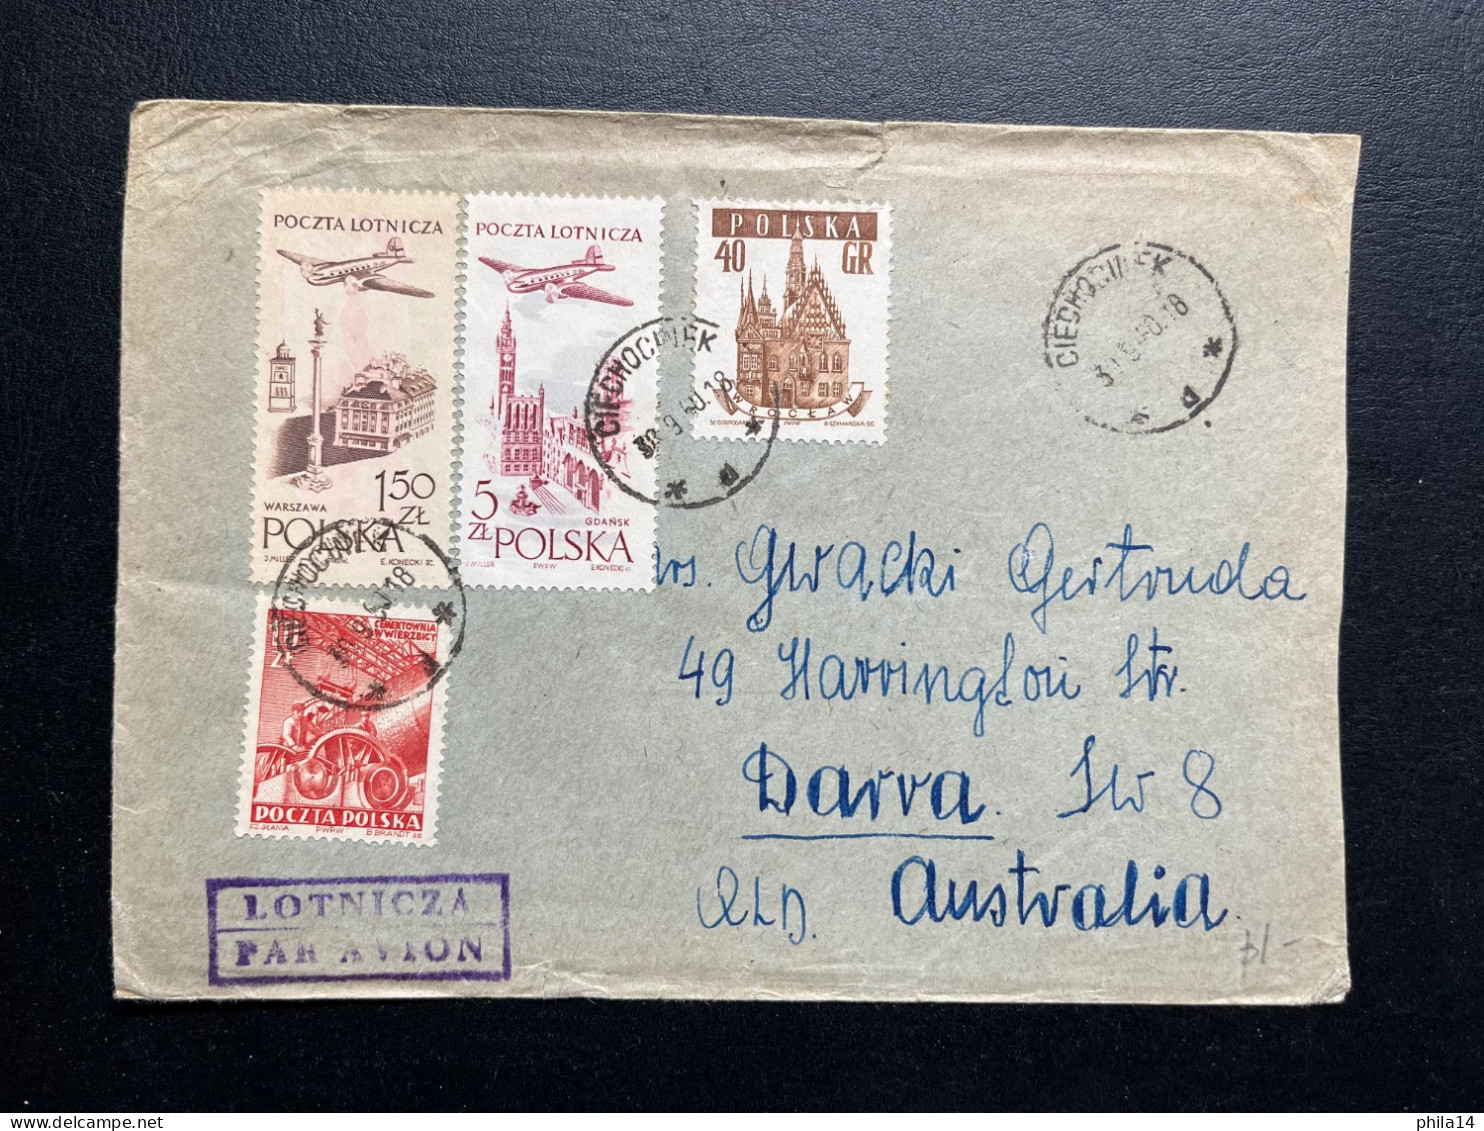 ENVELOPPE POLOGNE CIECHOCWEK 1960 POUR DARVA AUSTRALIE - Lettres & Documents